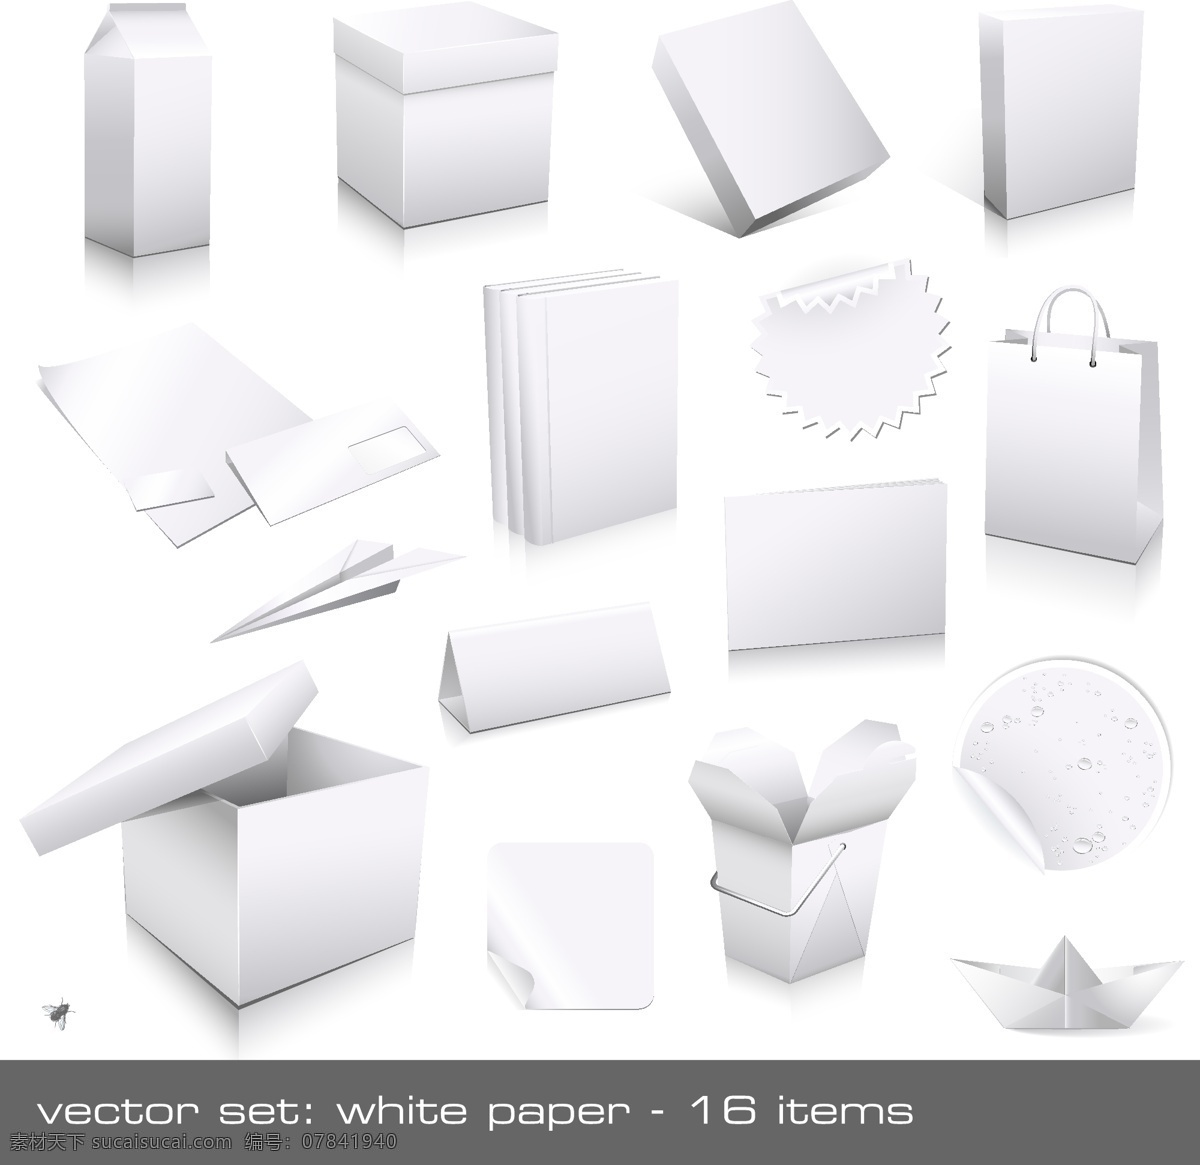 空白 纸盒 vi 元素 矢量 纸箱 牛奶盒 箱子 软件包装 信纸 信封 书本 台历 纸船 纸张 卷角 齿状圆形 手挽袋 文件夹 手提袋 纸袋 vi元素 矢量素材 包装设计